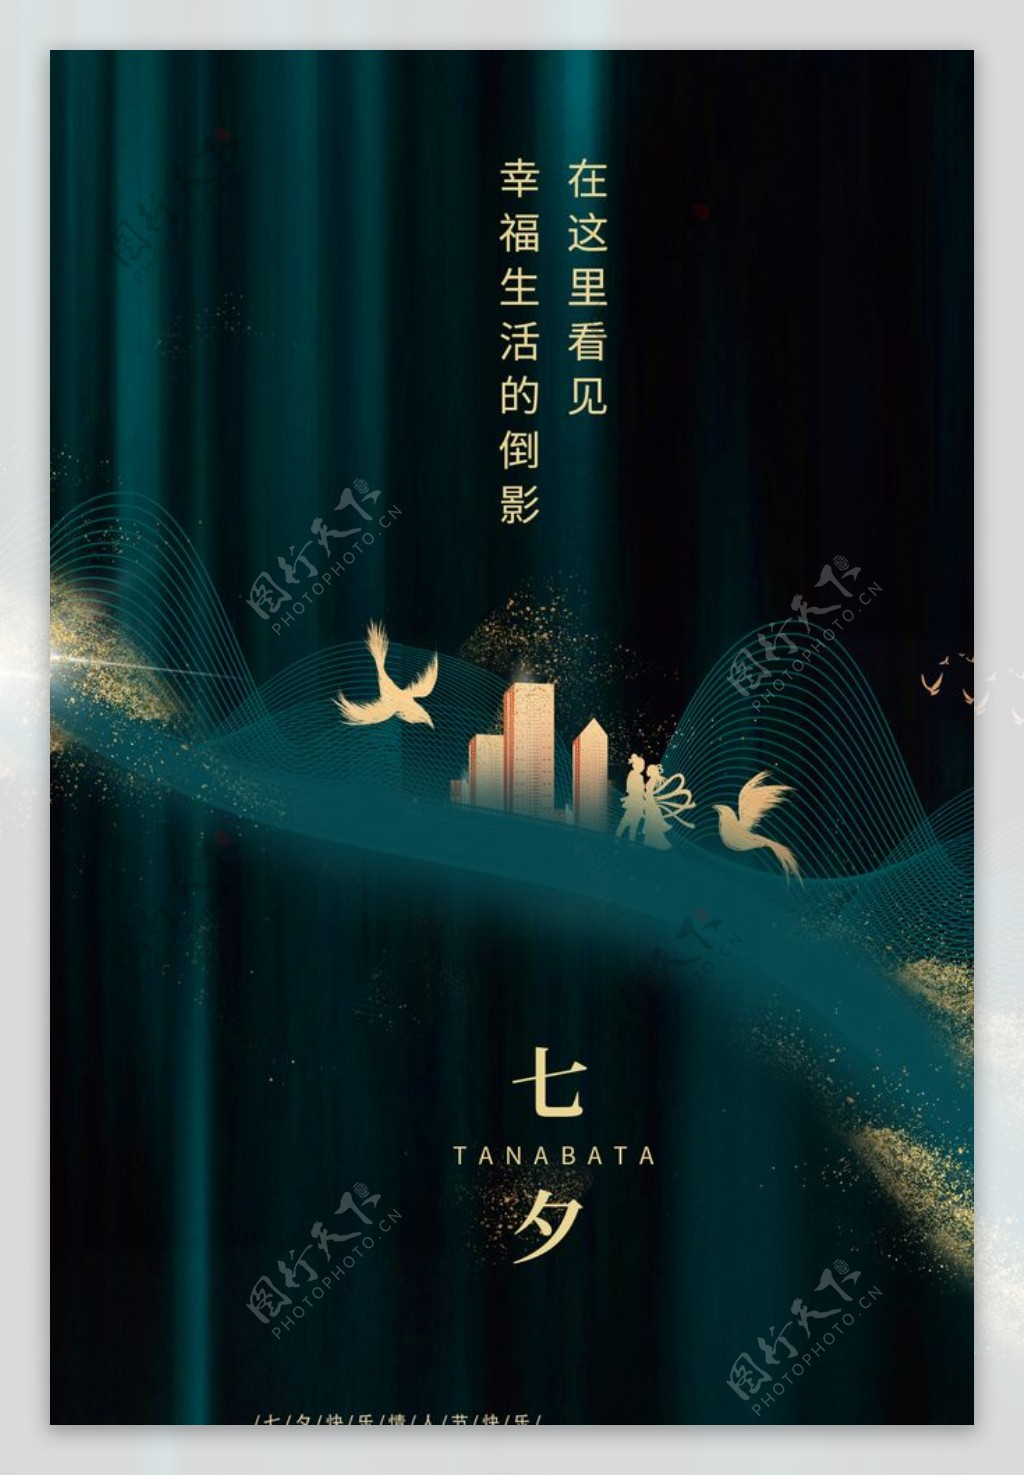 七夕节日活动促销宣传海报素材